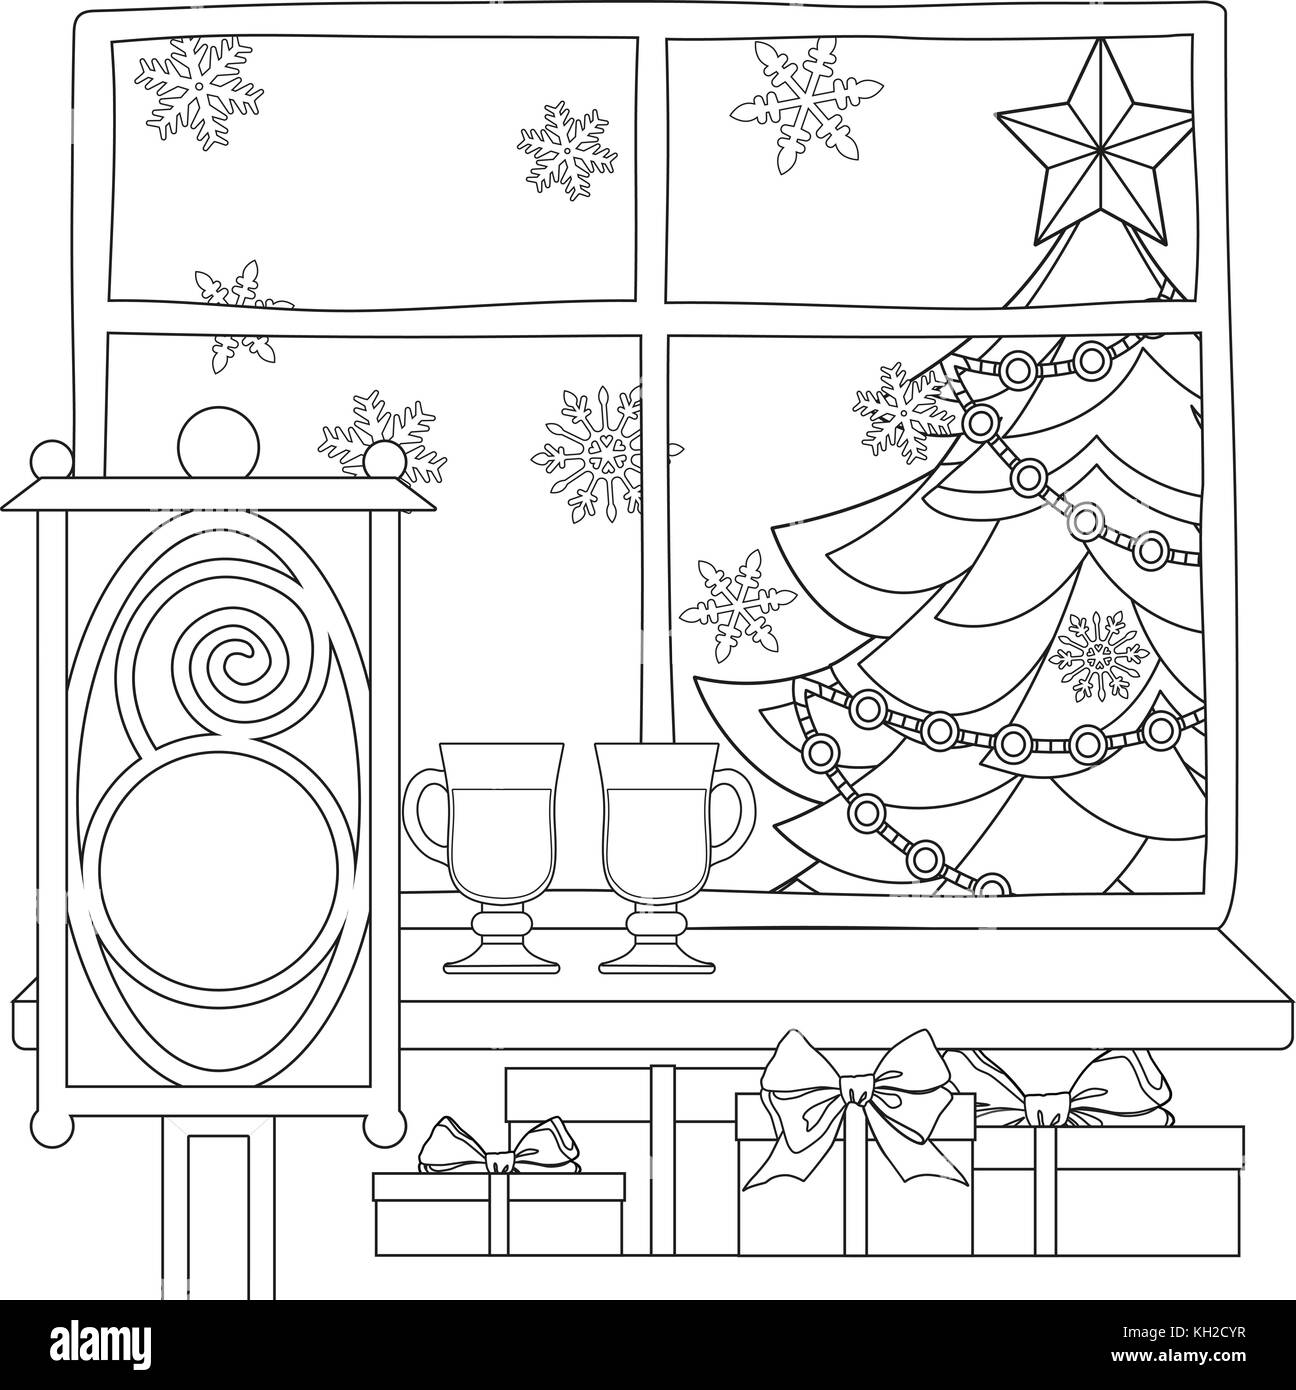 Tema Natale poster con albero di natale, stella, ghirlanda di luce, i fiocchi di neve, presenta, vin brulé, street lanterna. Illustrazione Vettoriale